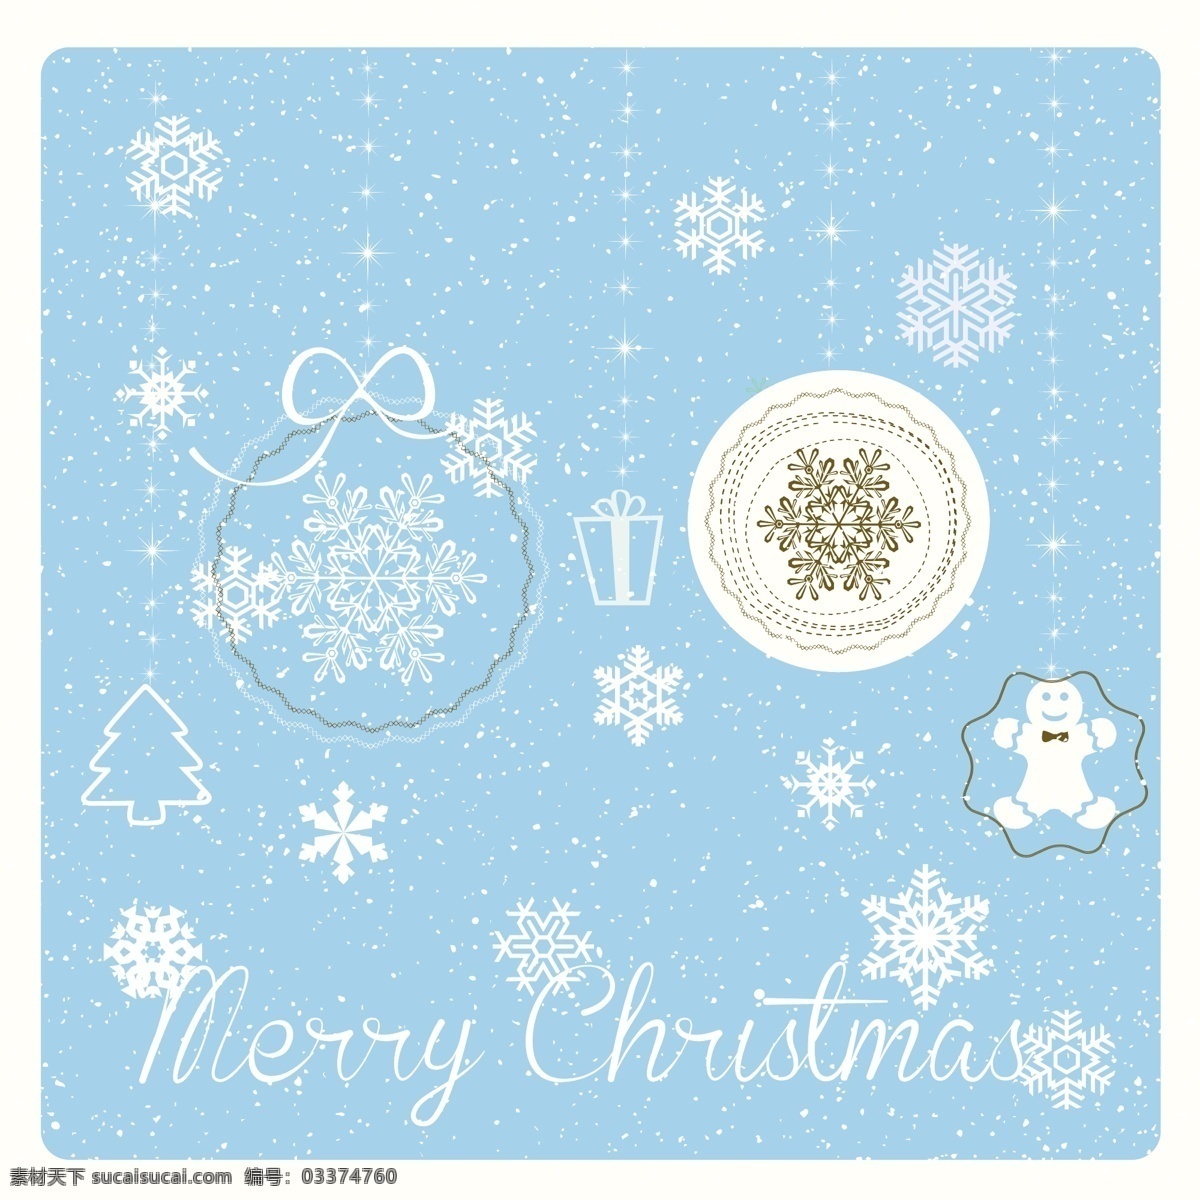 背景 蓝色 圣诞球 圣诞卡 圣诞快乐 冬天的雪 圣诞节 雪花 装饰 卡片 文化 冷 假期 姜饼 季节 节日 十二月